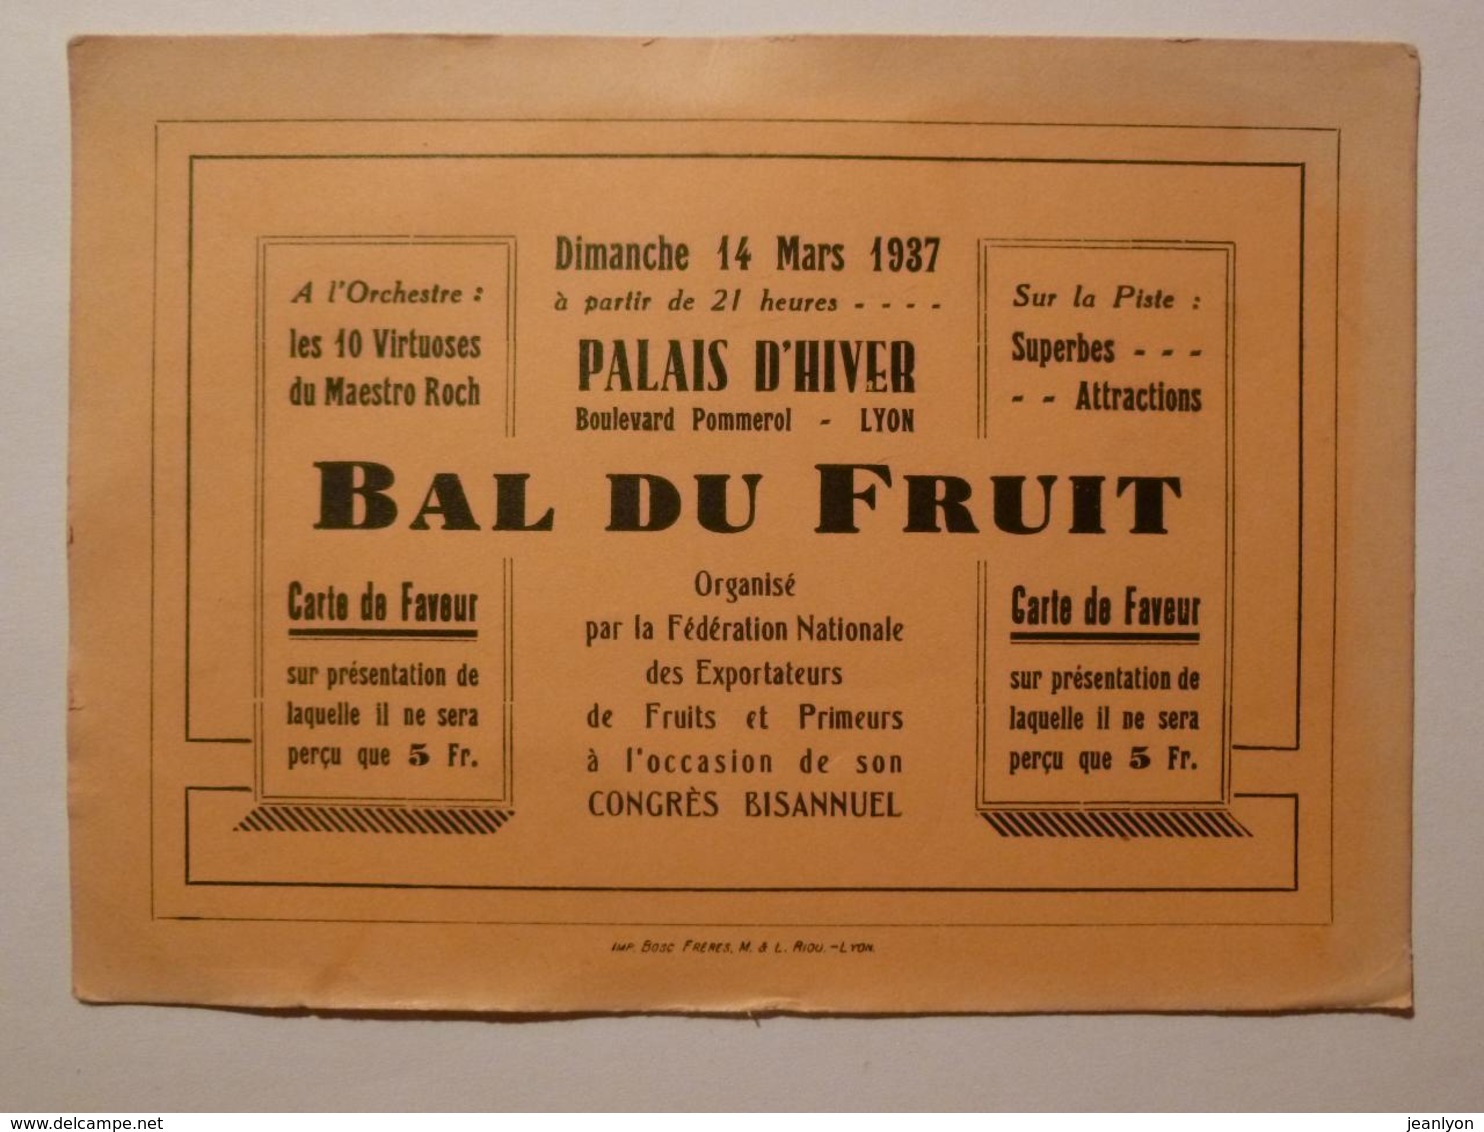 LYON / PALAIS HIVER - Boulevard POMMEROL - 14 MARS 1937 - BAL DES FRUITS / Carte De Faveur / Entrée Spectacle - Biglietti D'ingresso